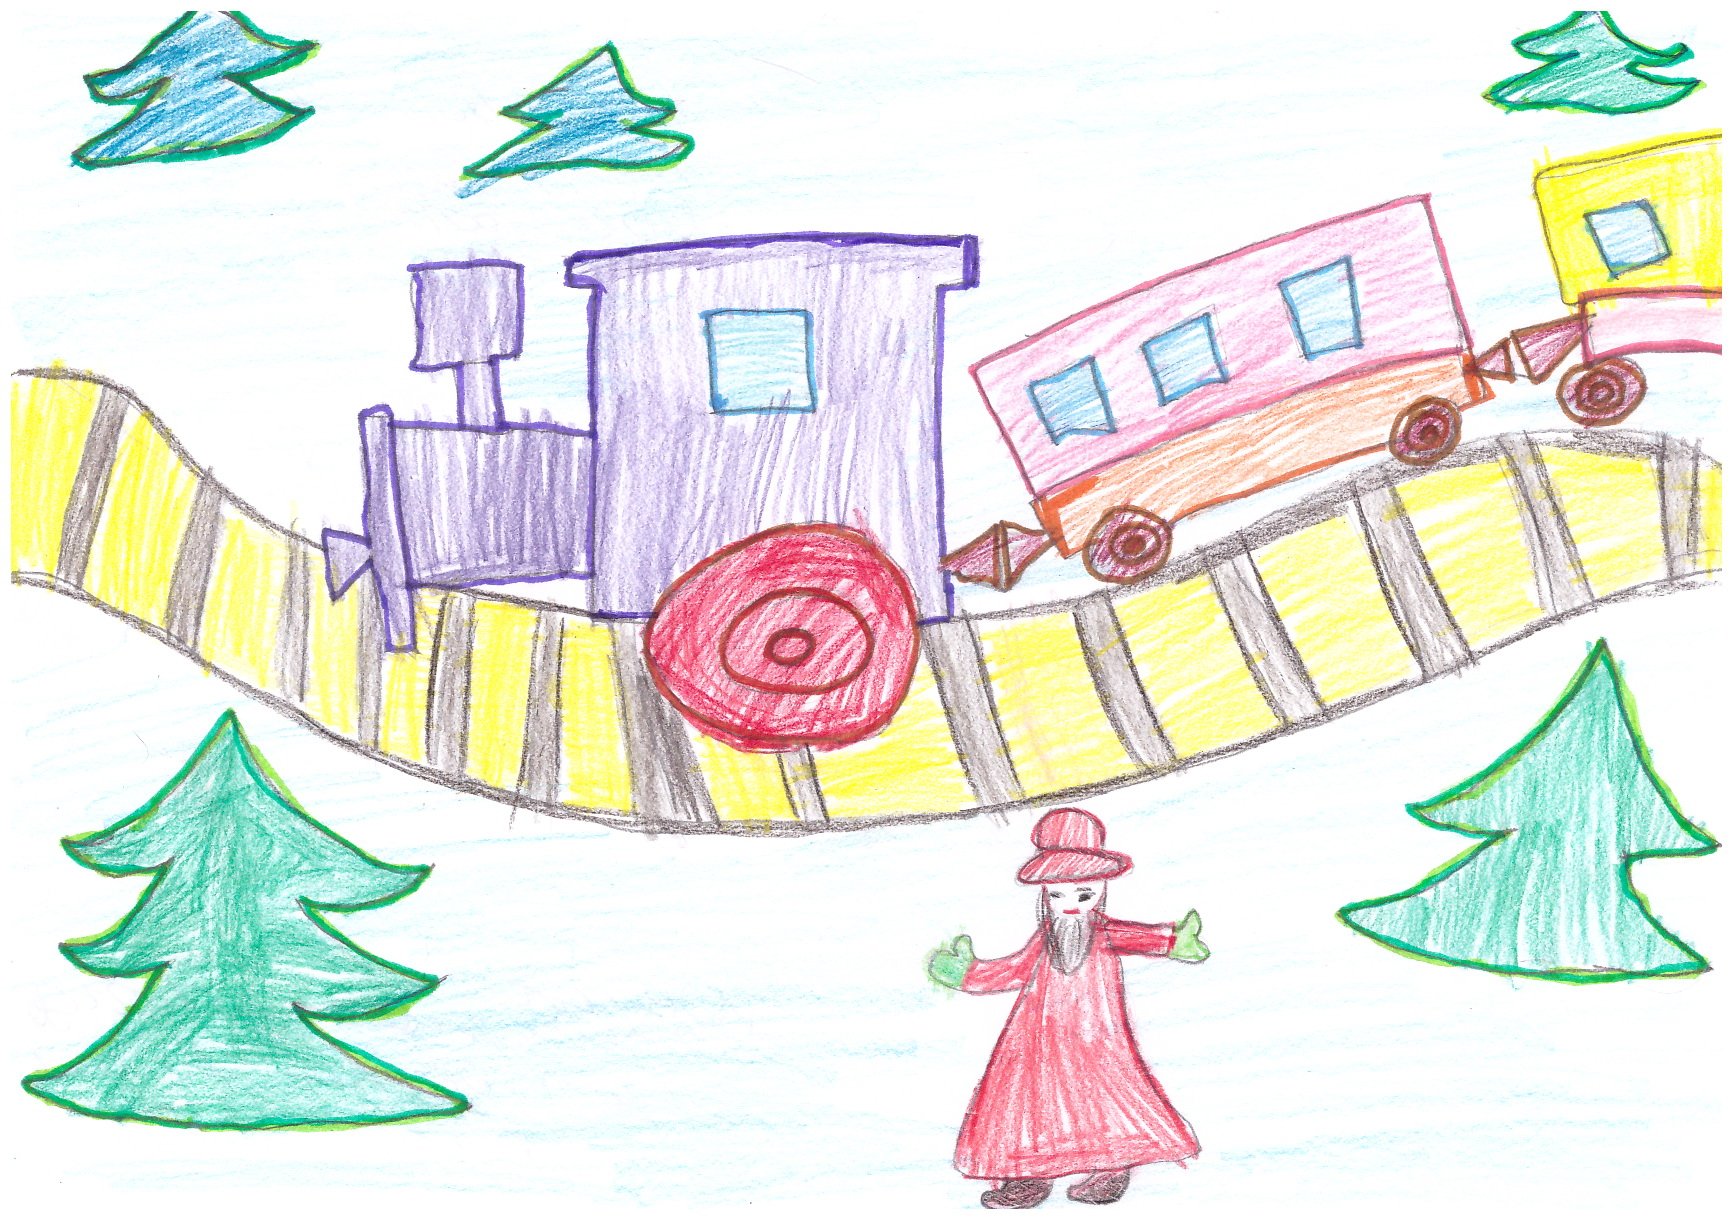 Детская железная дорога рисунок